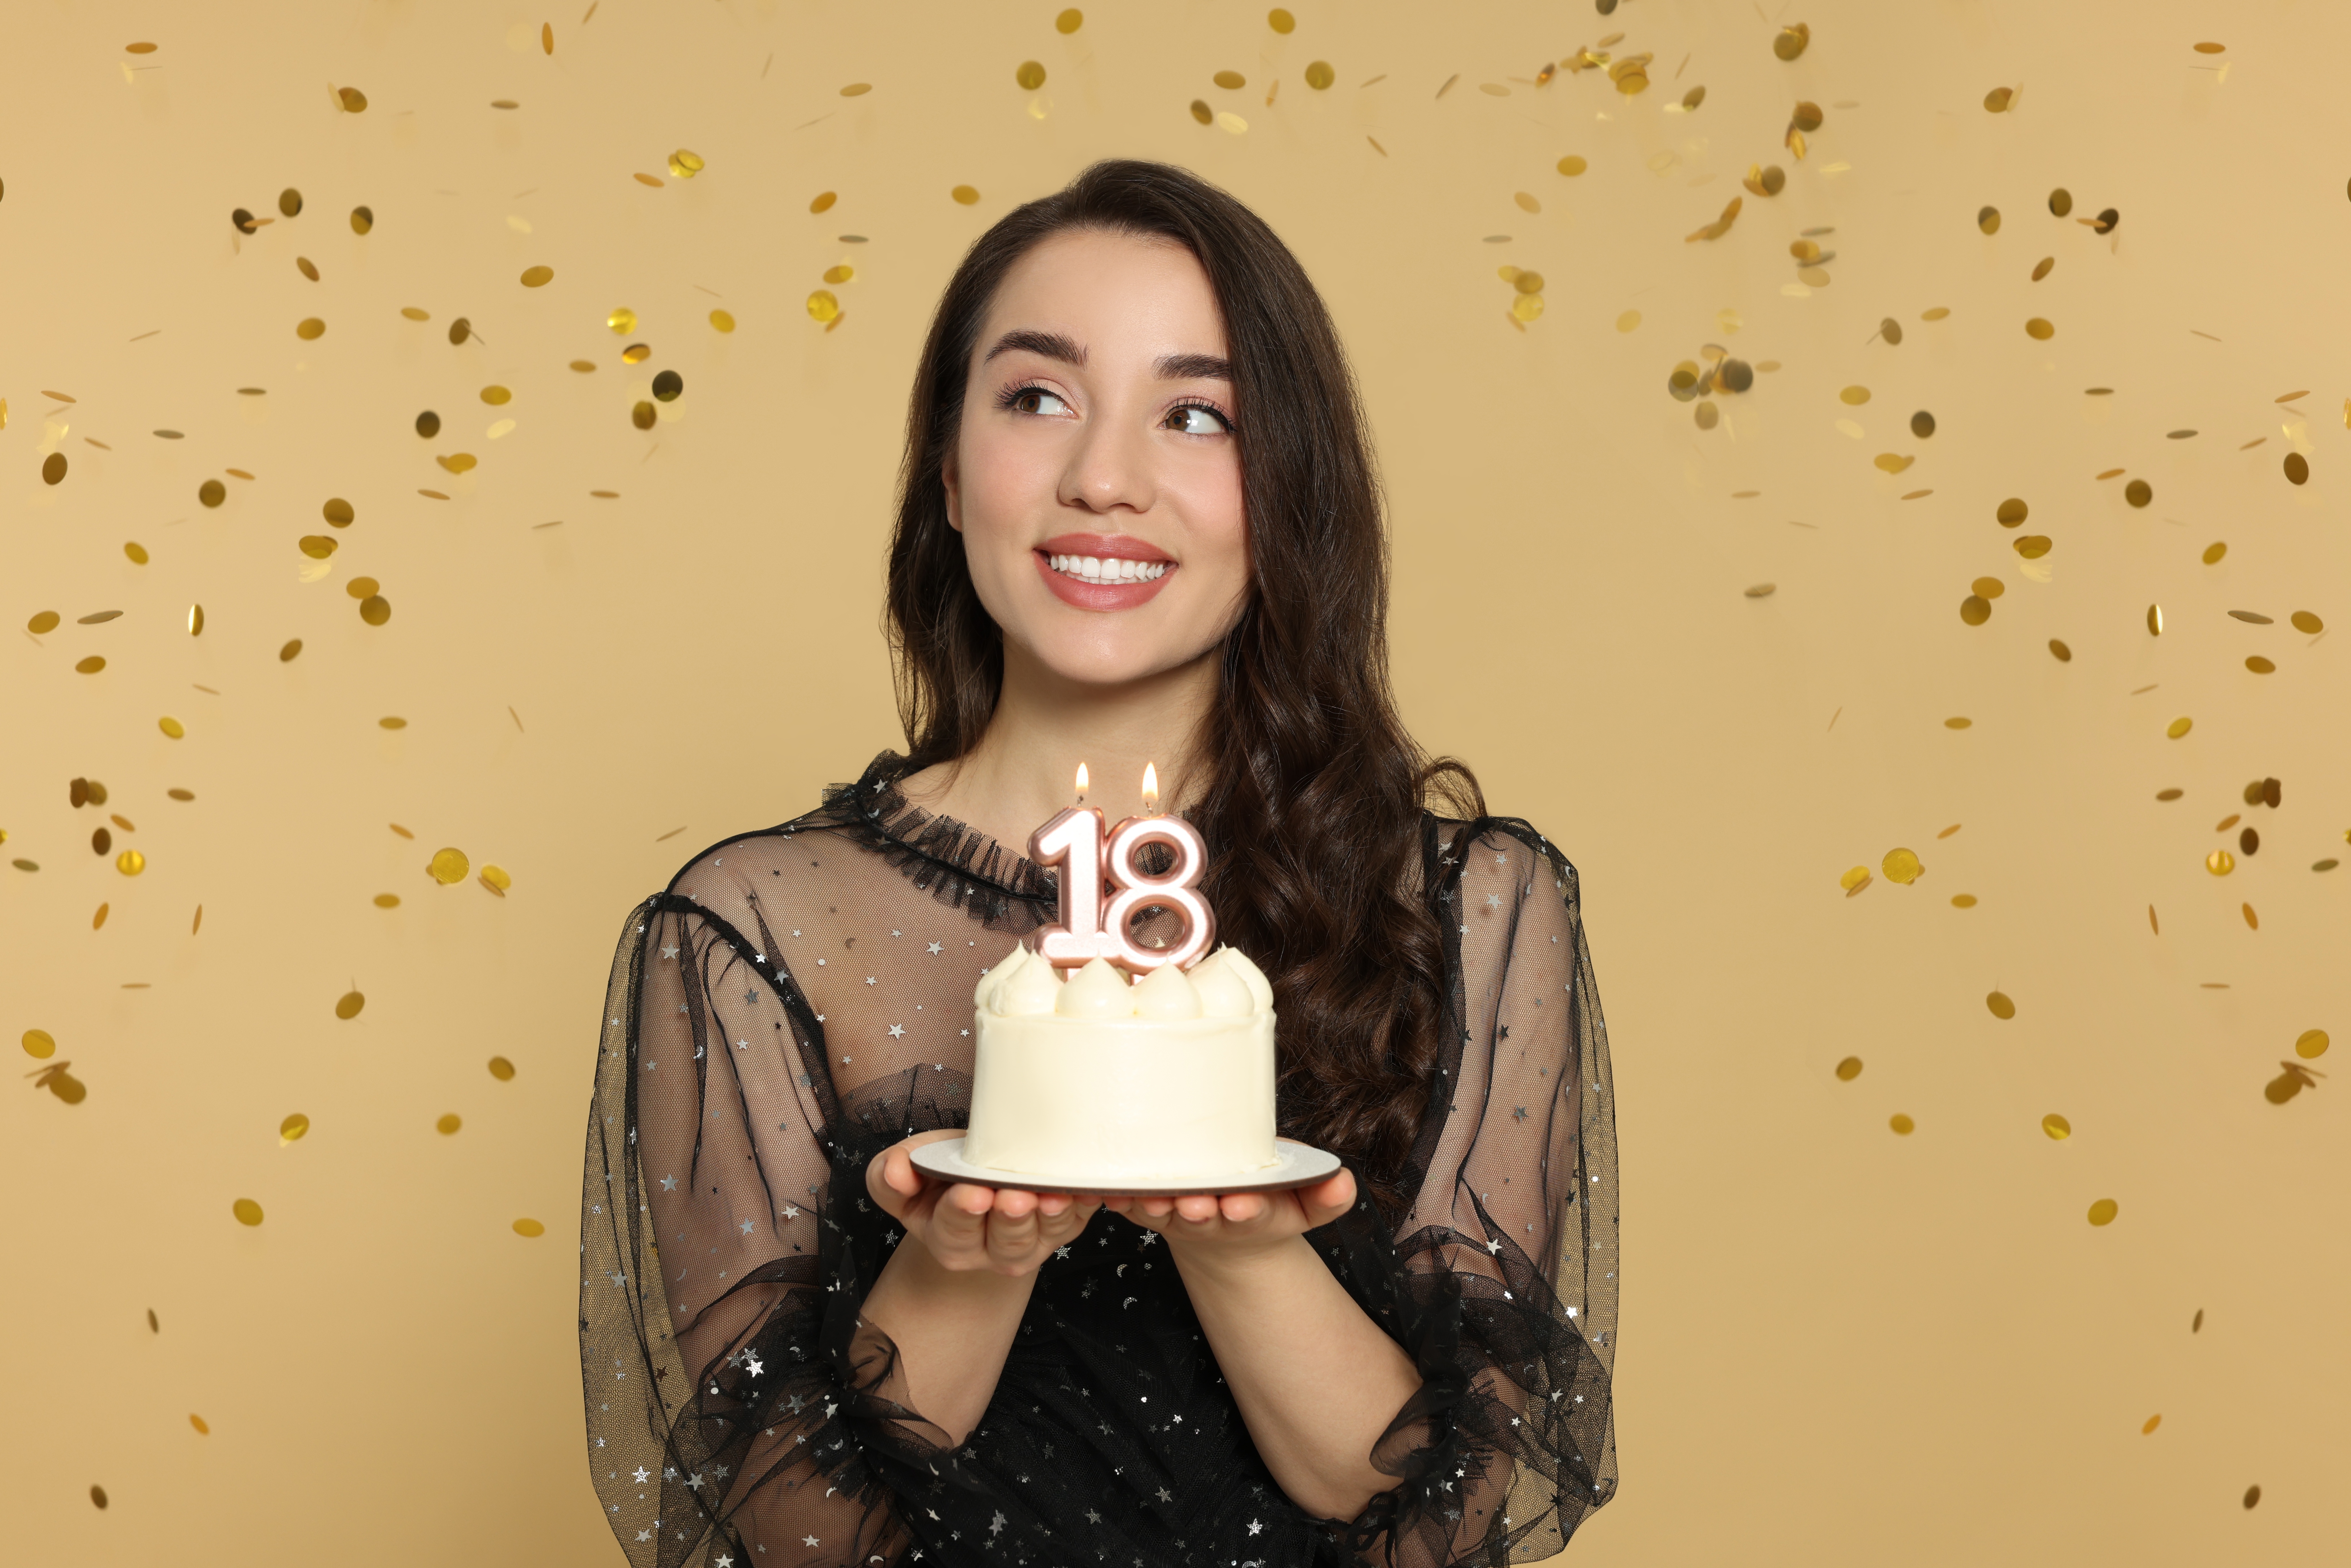 Jeune femme tenant son gâteau d'anniversaire pour ses 18 ans | Source : Shutterstock